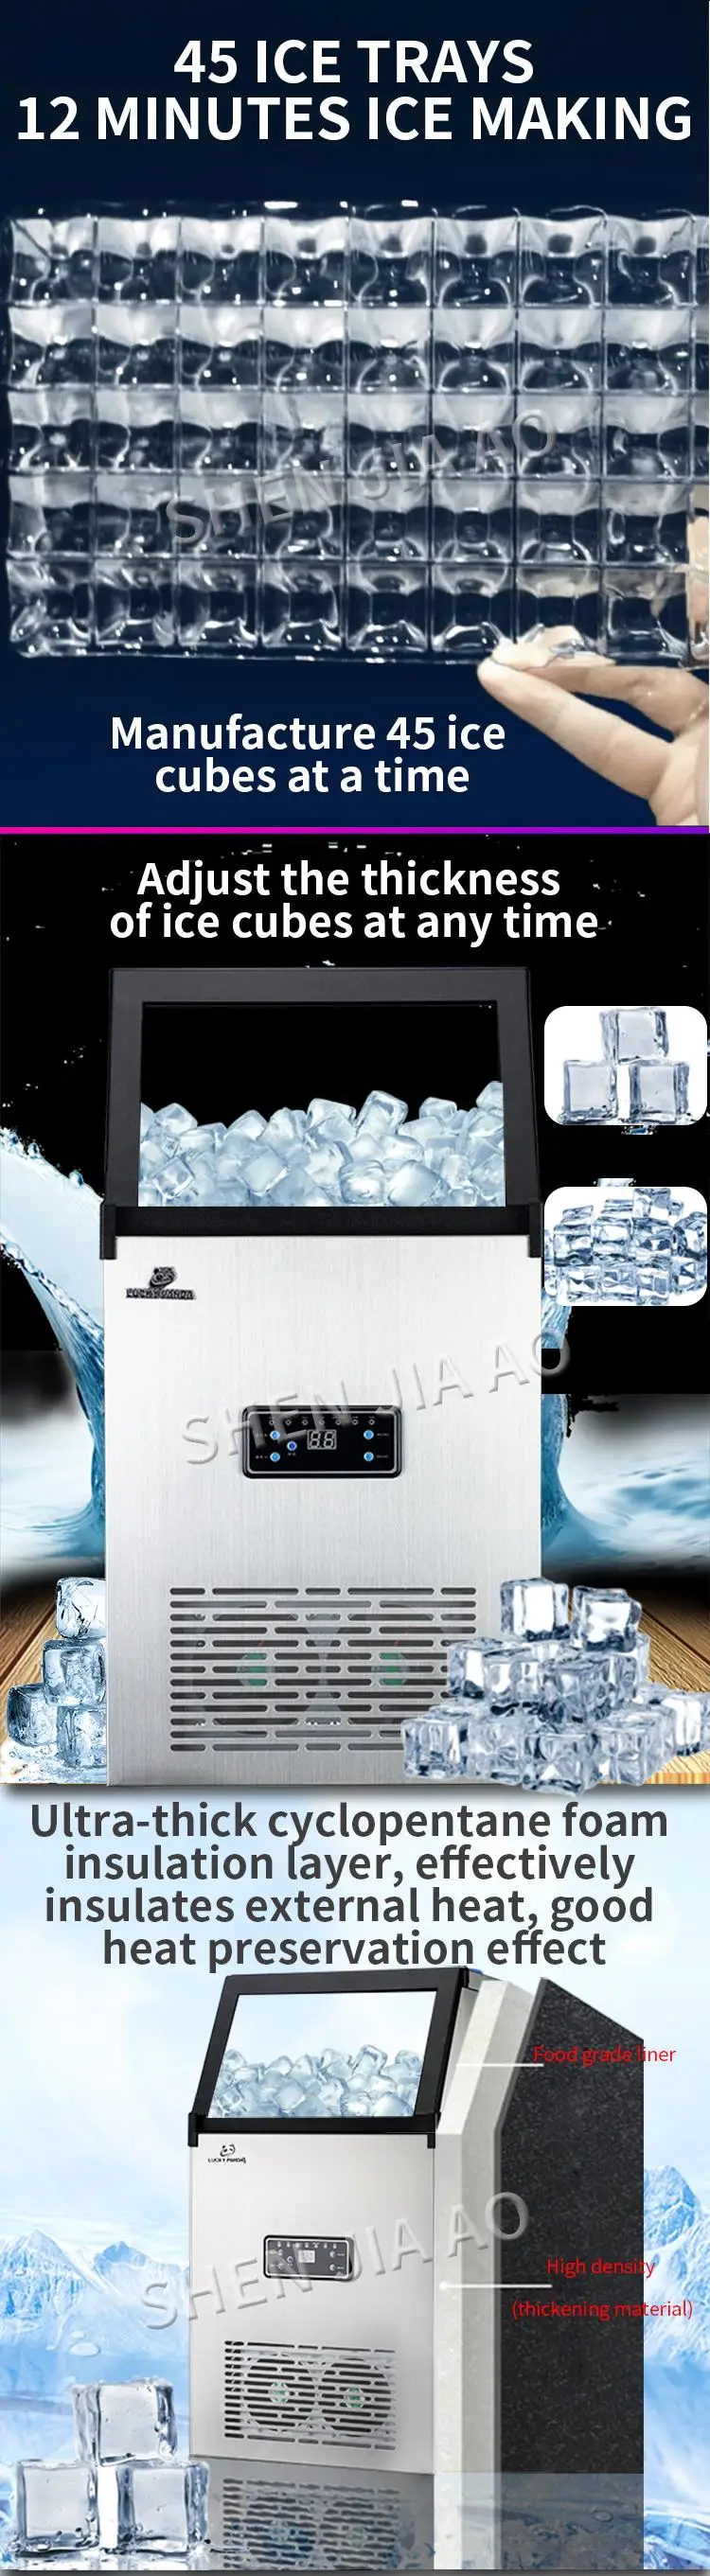 70 кг/24 ч льда производства коммерческий льдогенератор Электрический лед производитель кубиков для чайного магазина/бара/большой емкости машина для производства льда